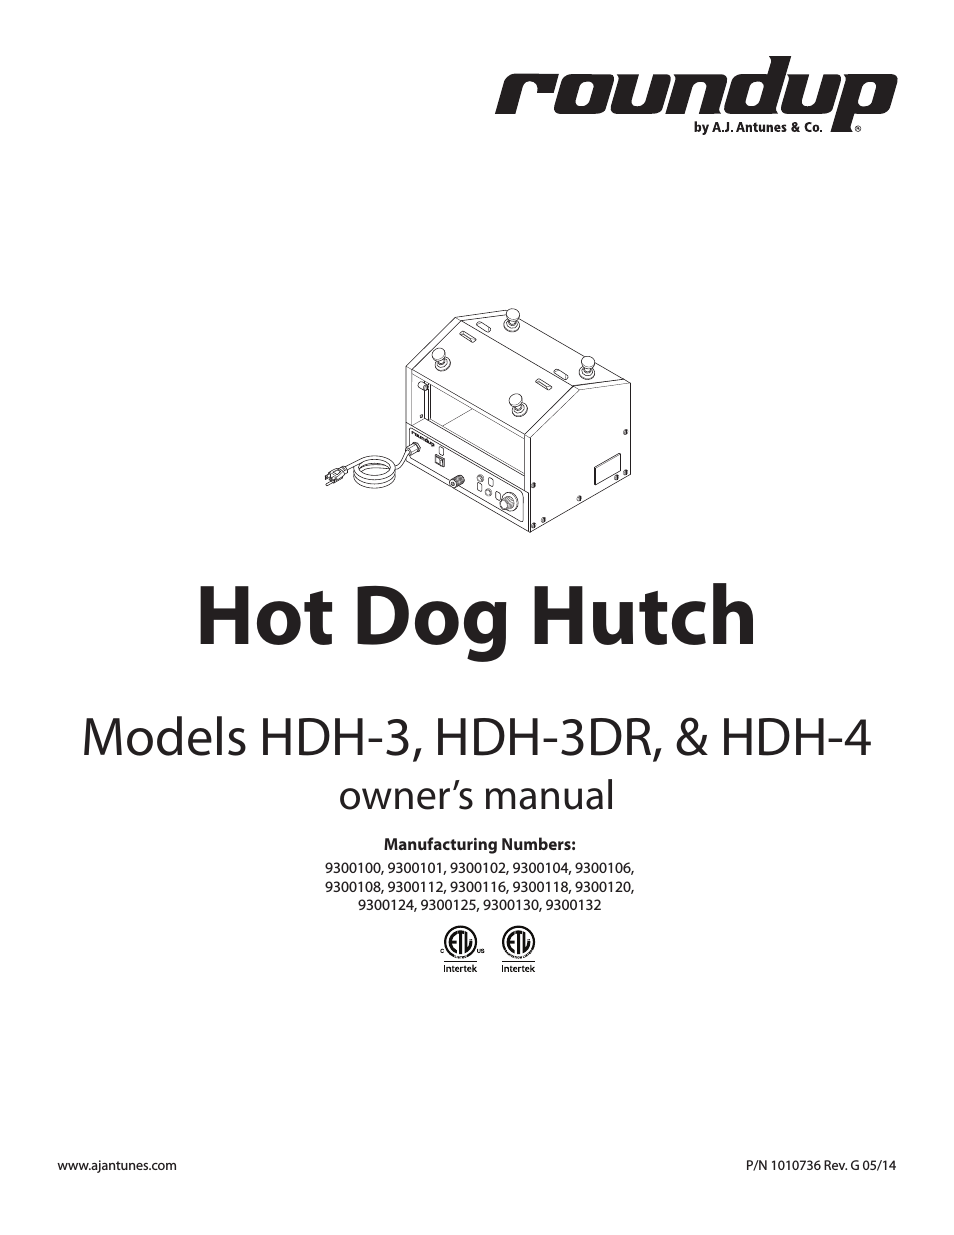 HDH-3 9300104